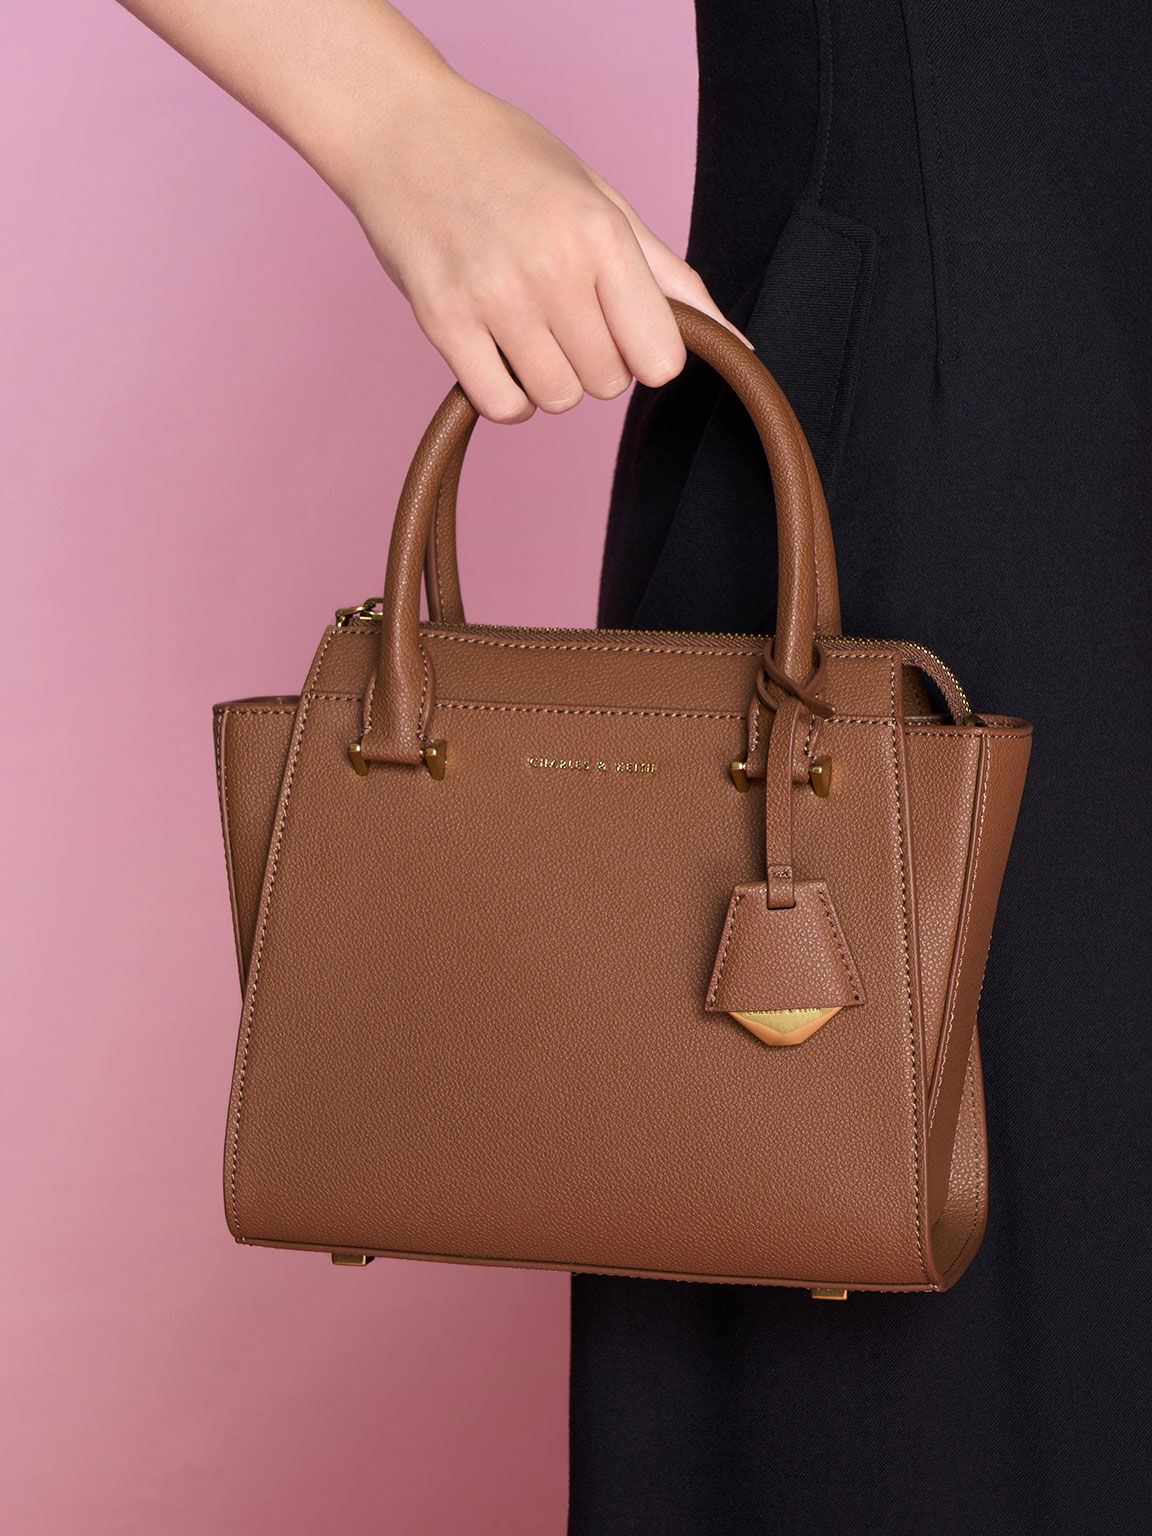 Harper Geometric Top Handle Bag, Chocolate, hi-res